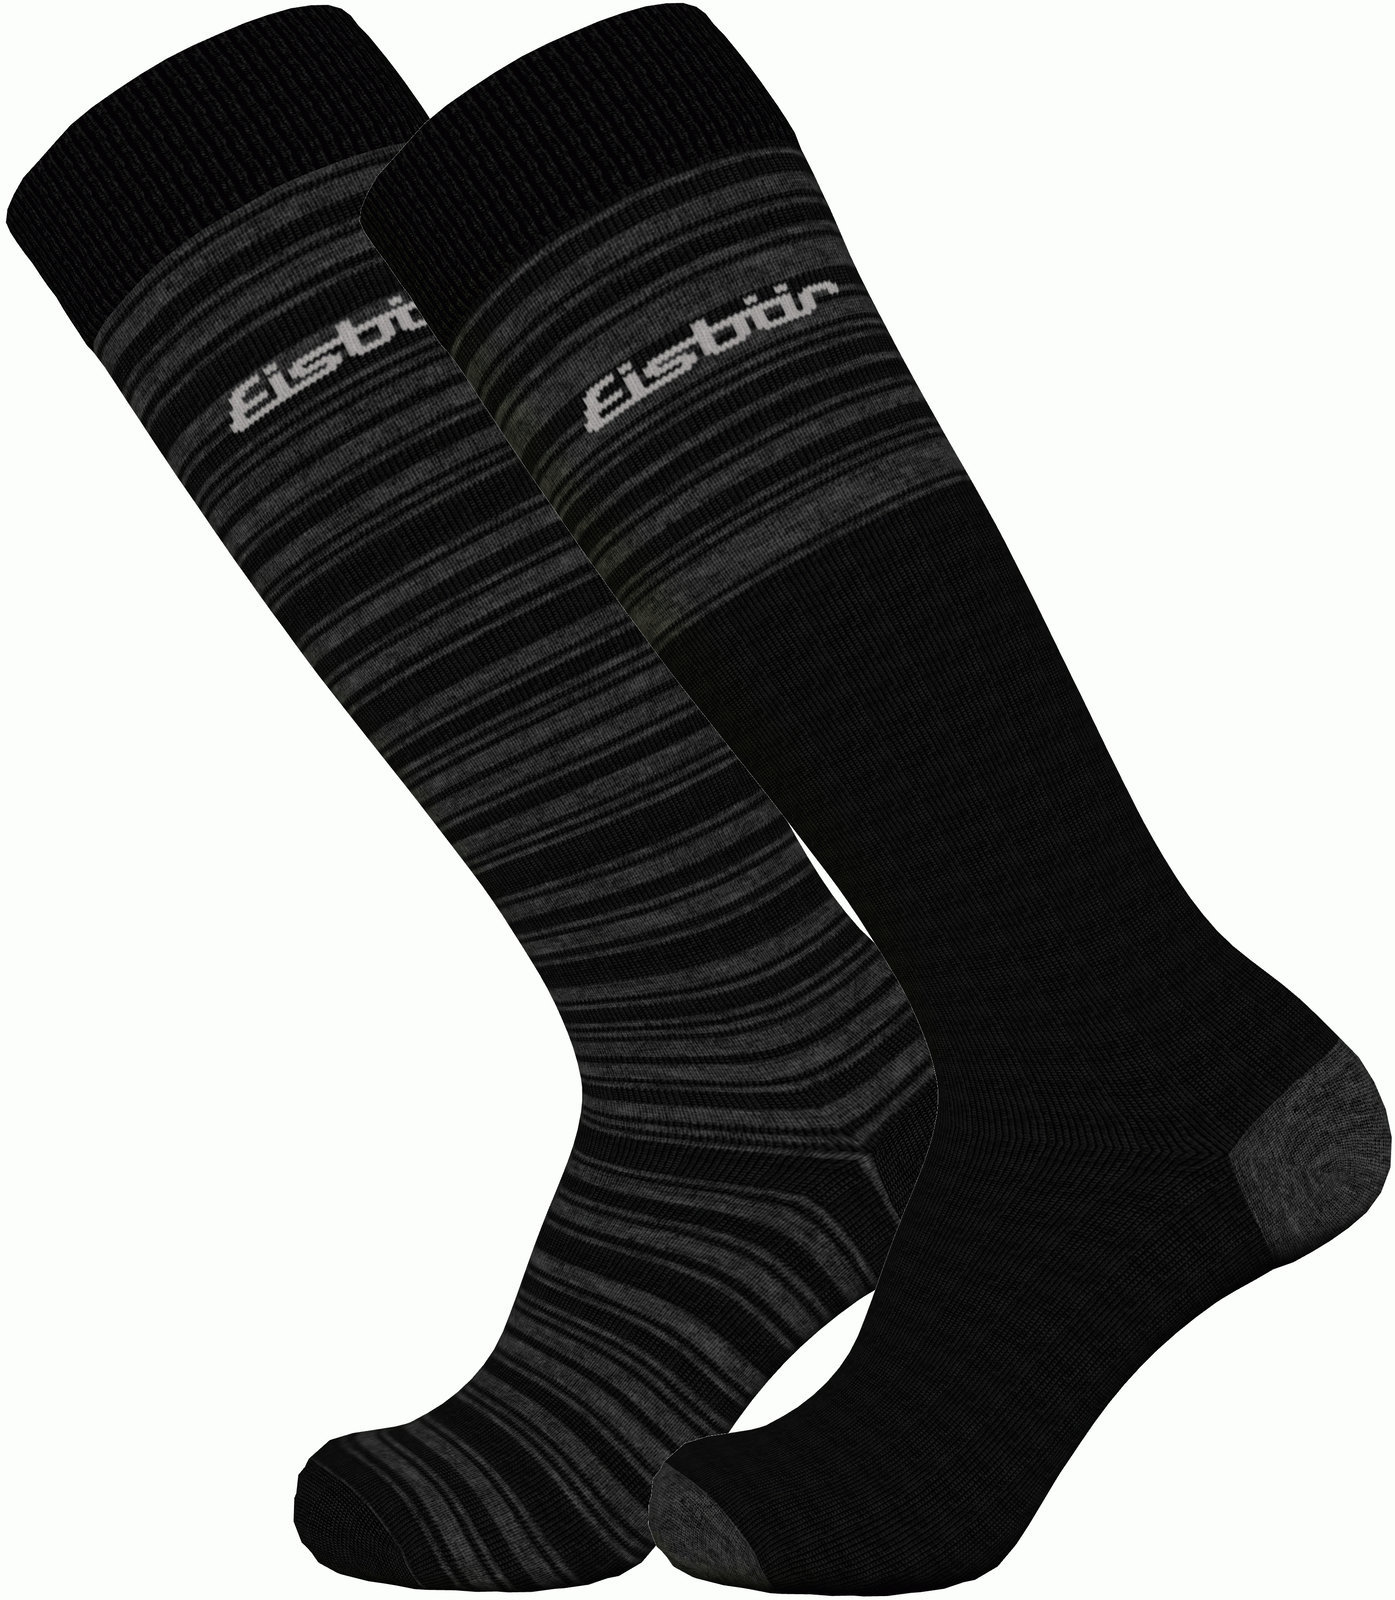 Ski Socken Eisbär Ski Comfort 2 Pack Black/Grey 39-42